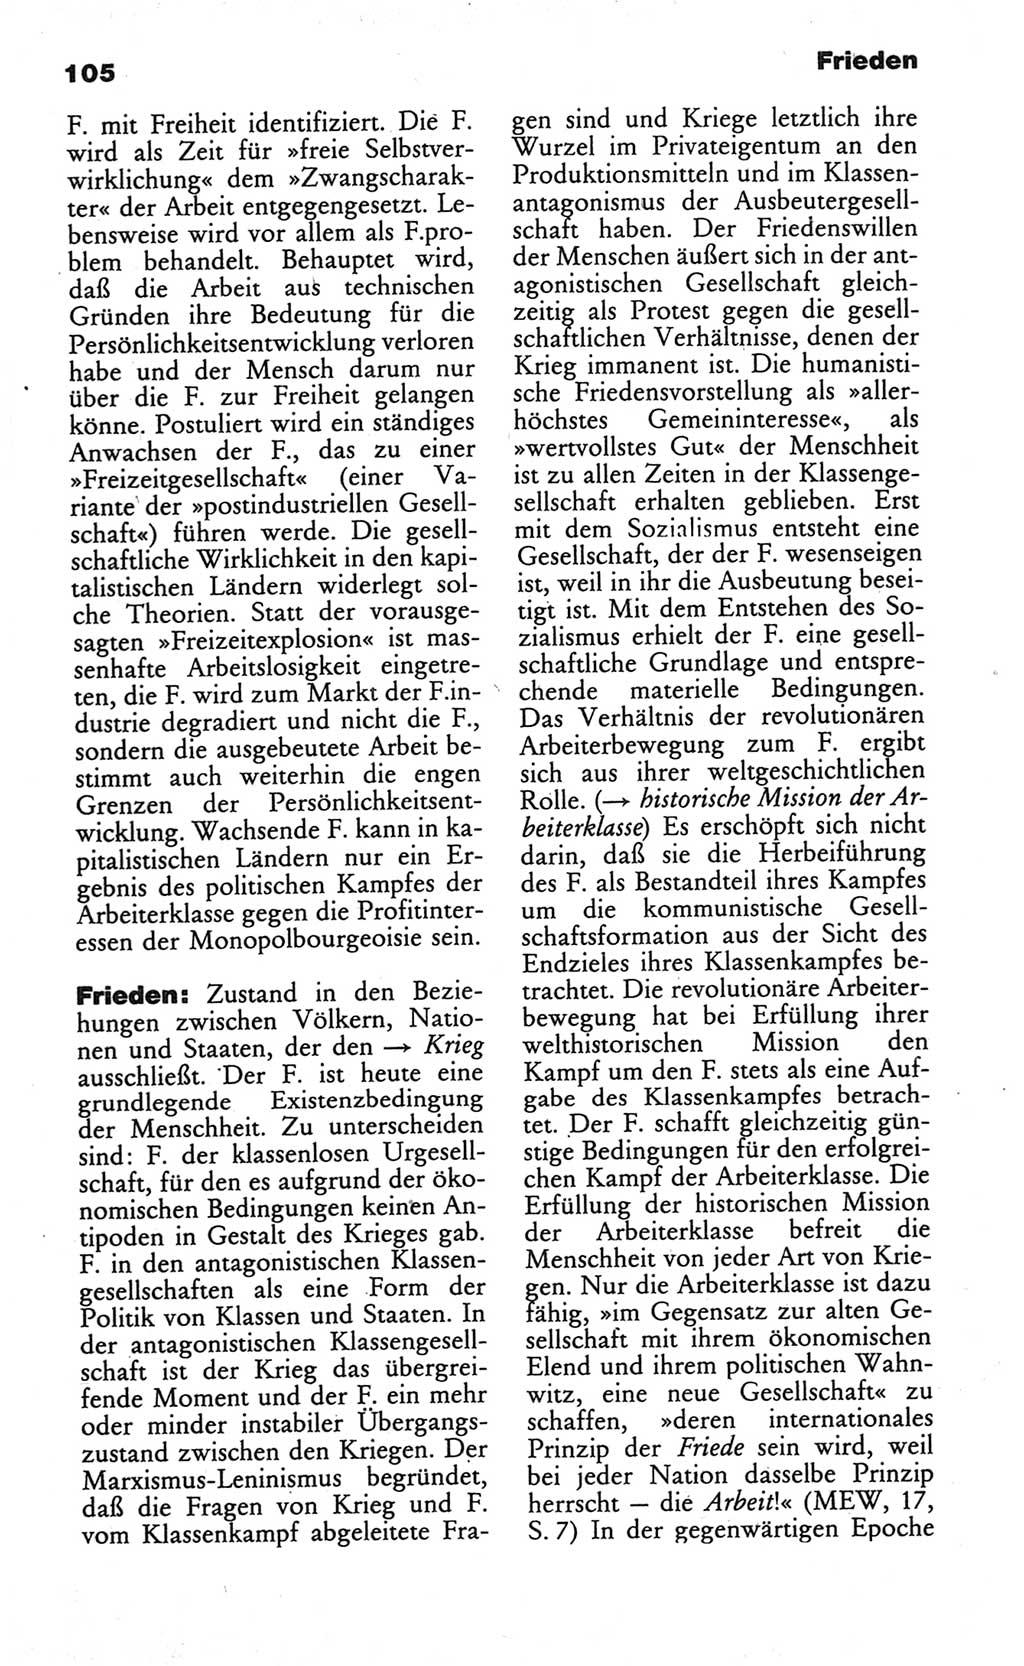 Wörterbuch des wissenschaftlichen Kommunismus [Deutsche Demokratische Republik (DDR)] 1984, Seite 105 (Wb. wiss. Komm. DDR 1984, S. 105)